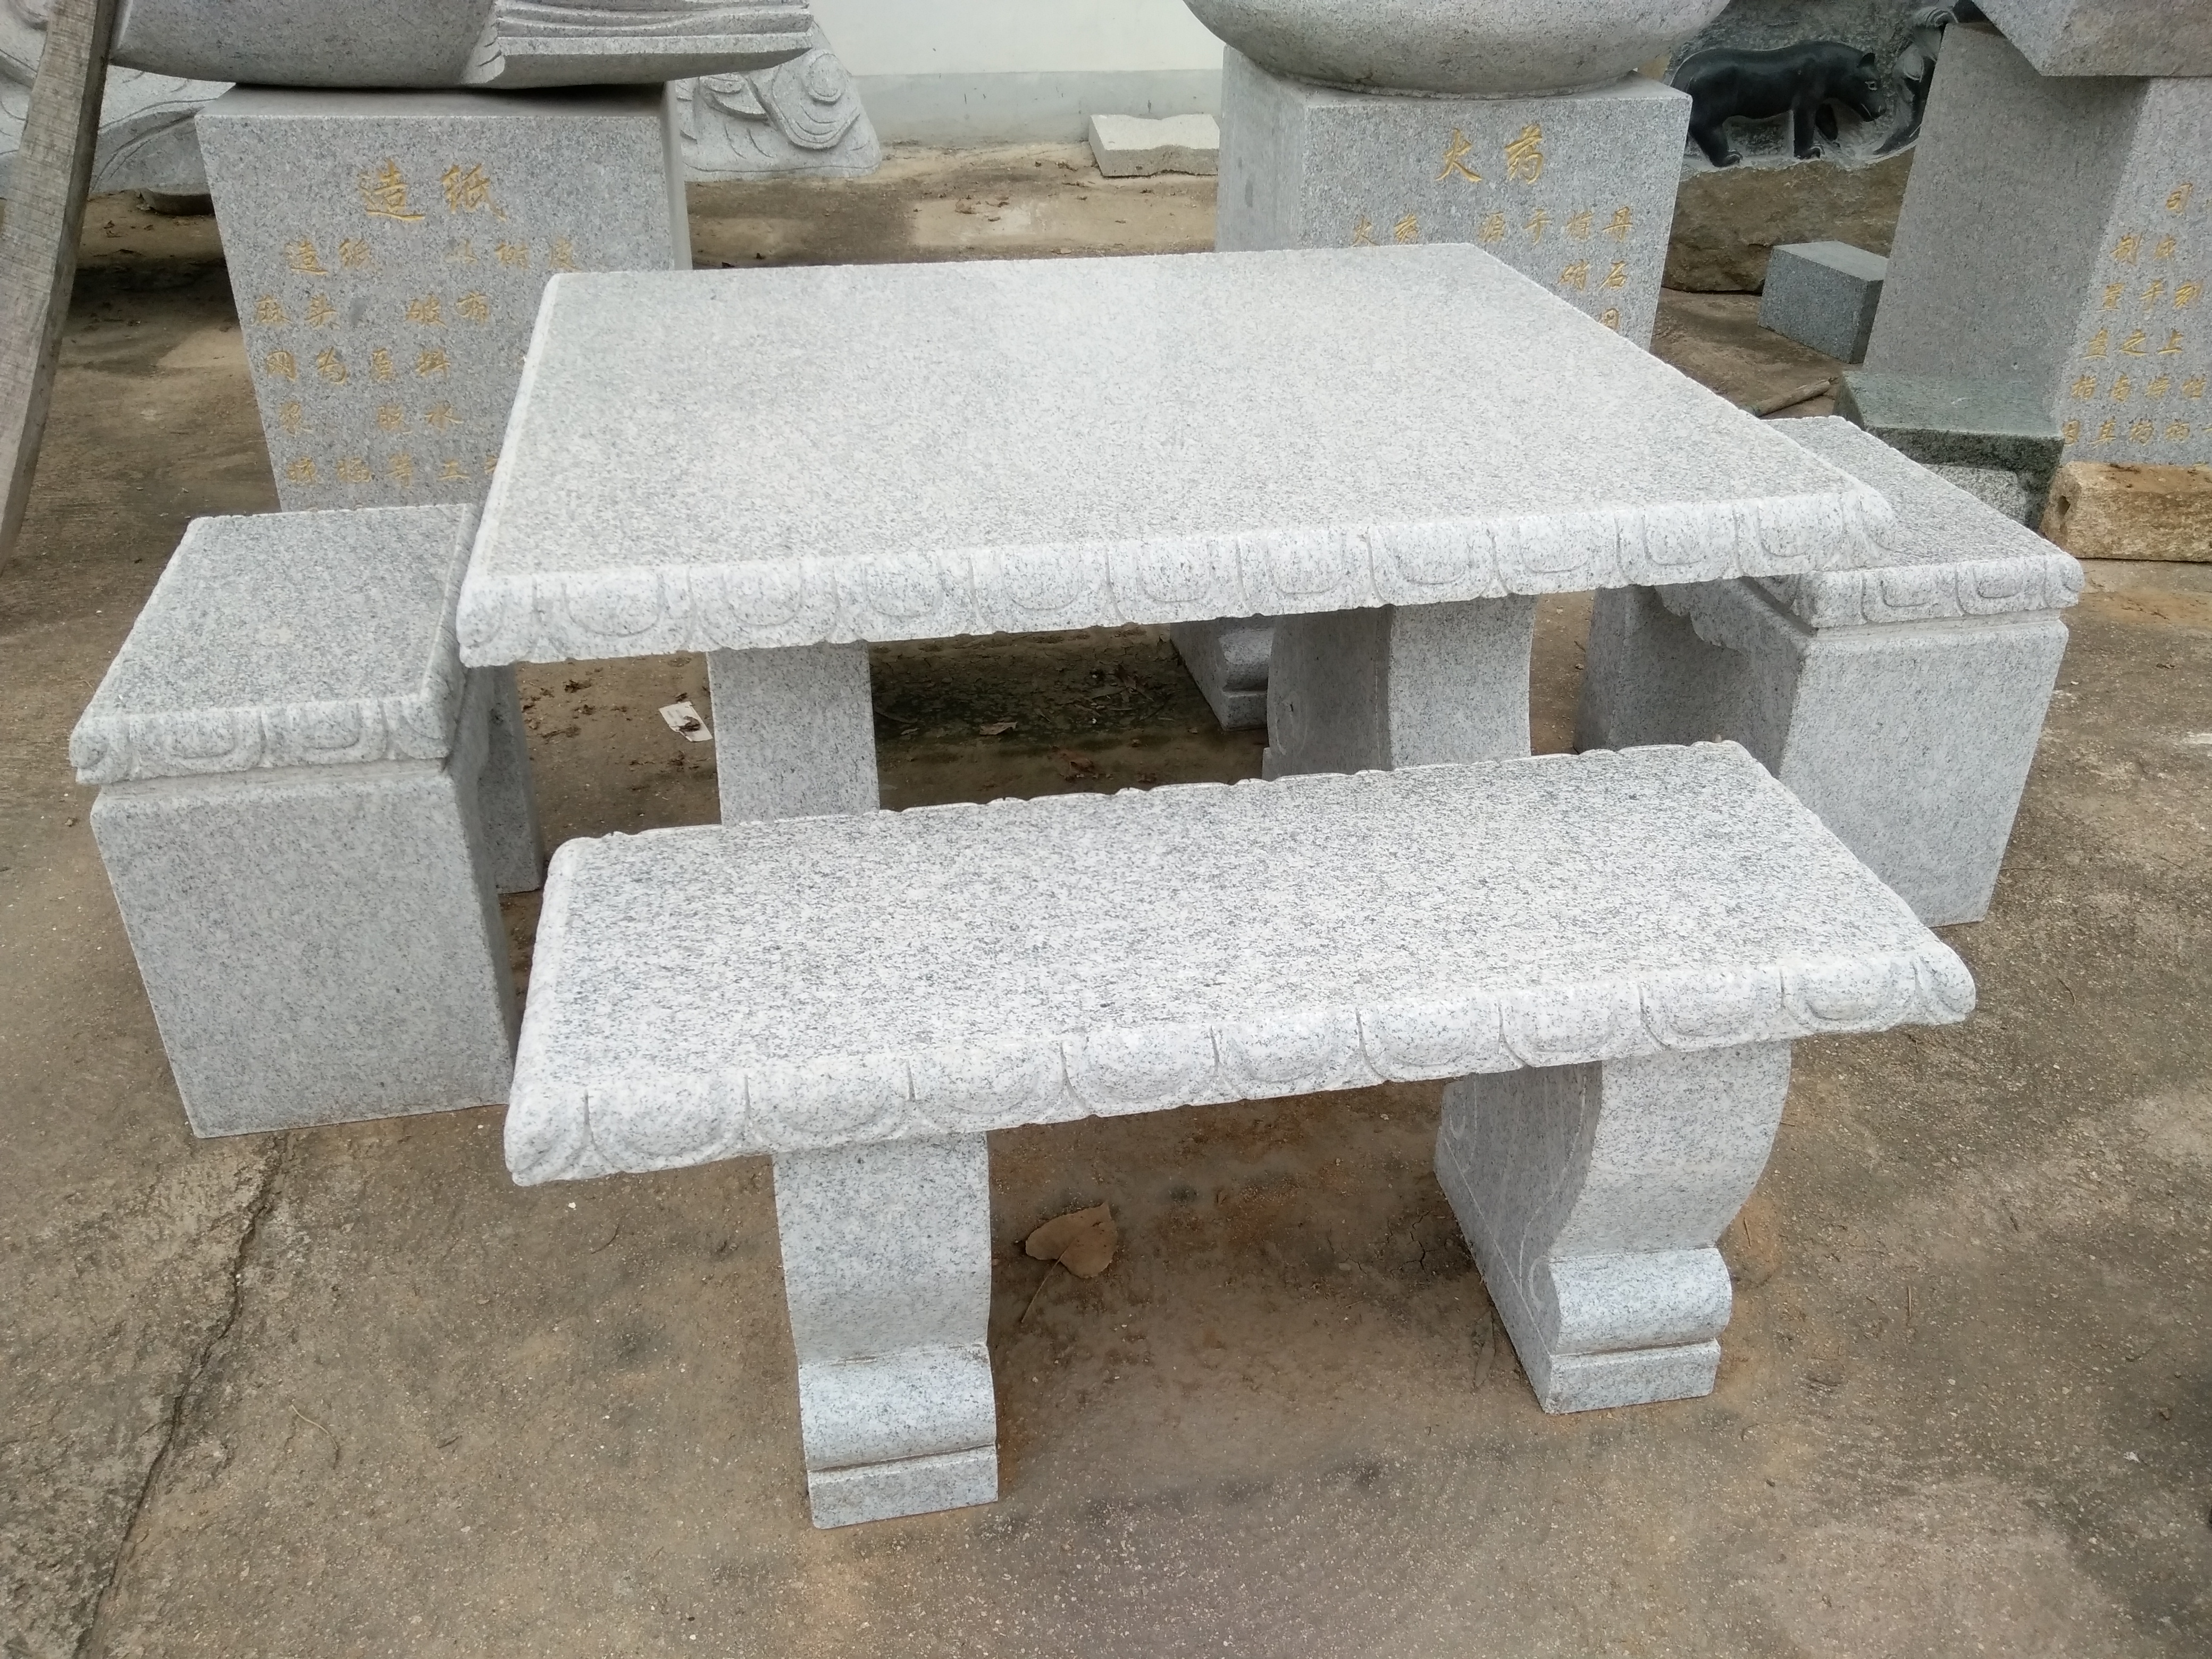 石桌椅石桌椅 石桌石凳庭院摆放户外天然大理石石头桌公园石桌椅石雕圆桌